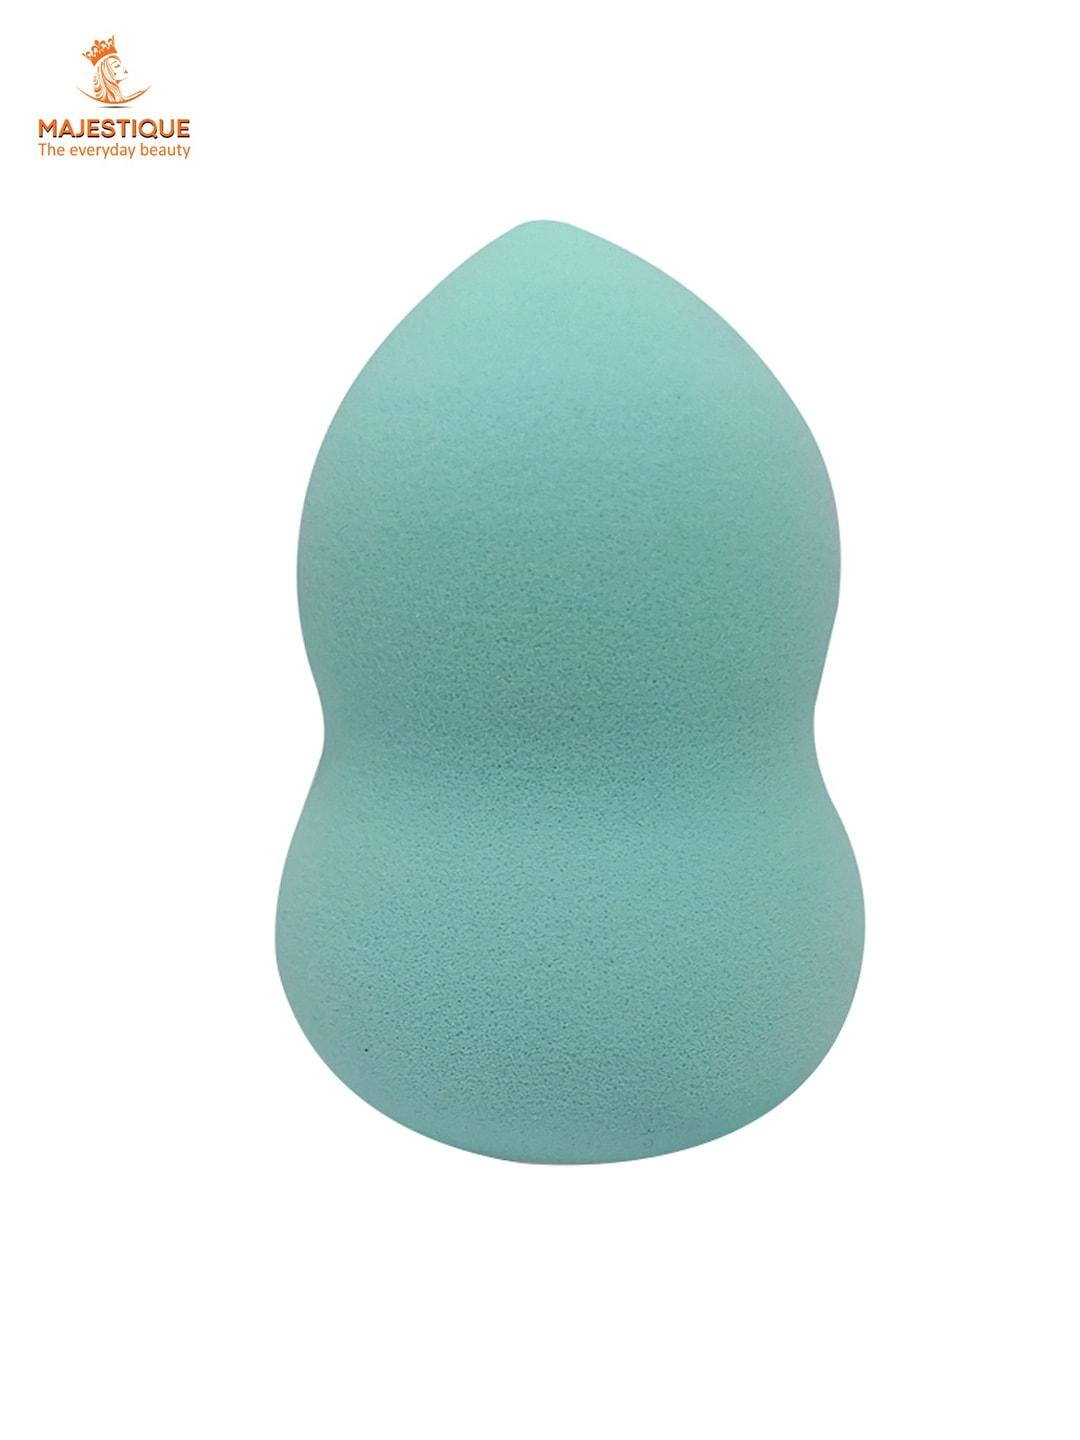 MAJESTIQUE Foundation Blending Face Beauty Sponge - Turquoise Blue